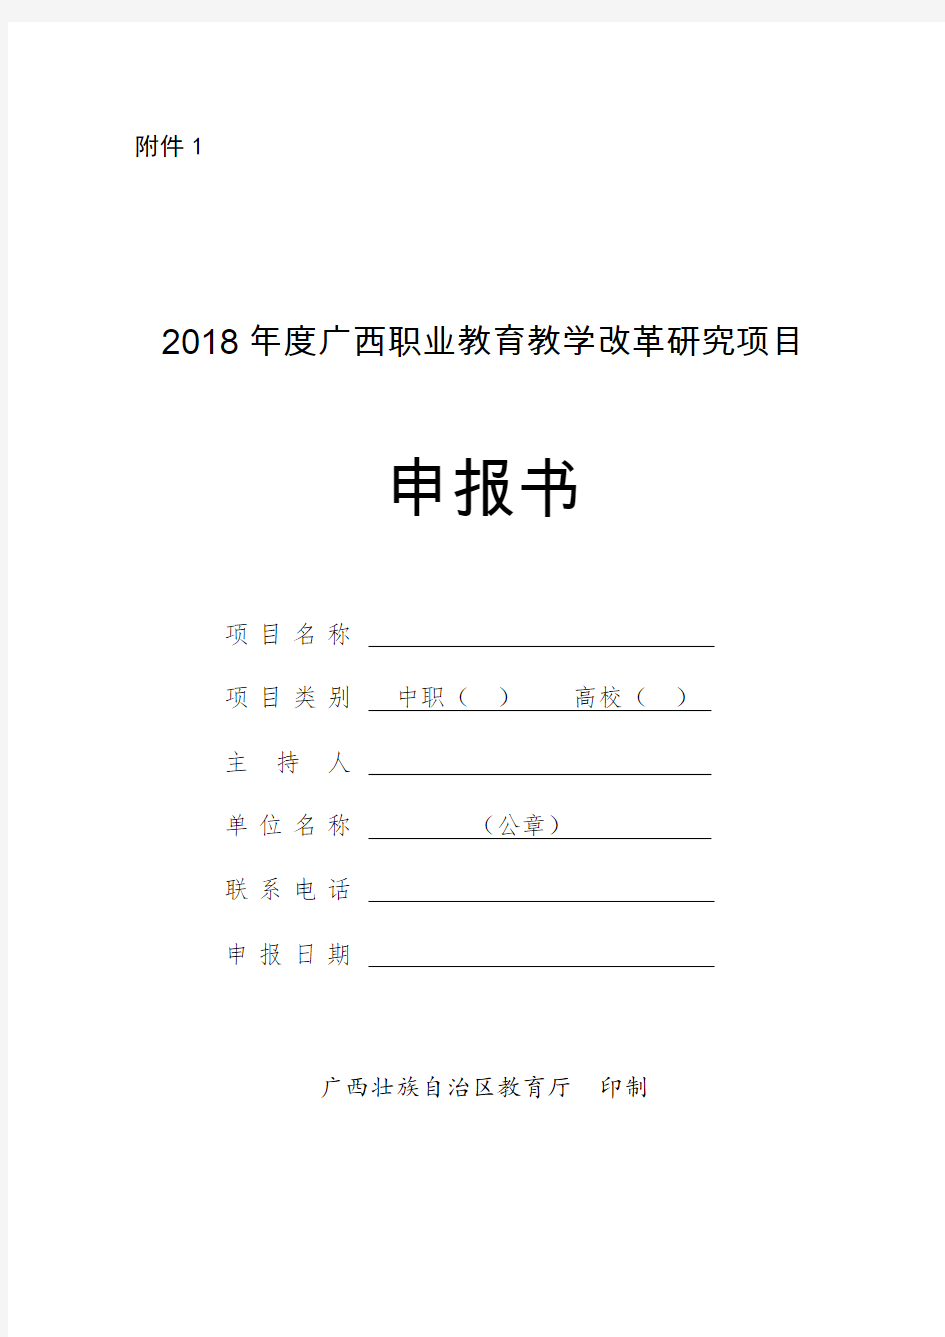 2018年广西职业教育教学改革研究项目申报书